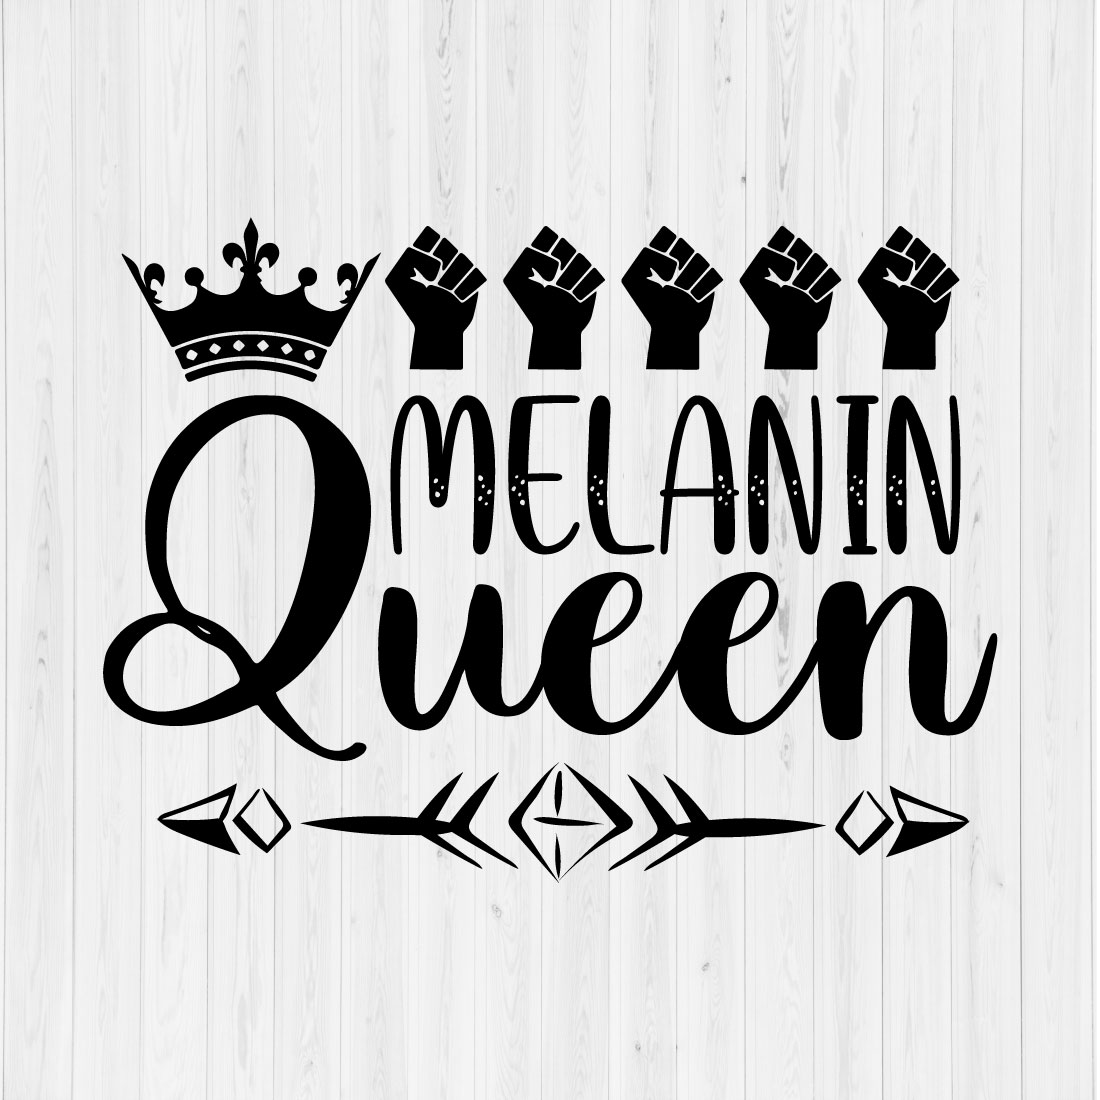 Melanin Queen preview image.